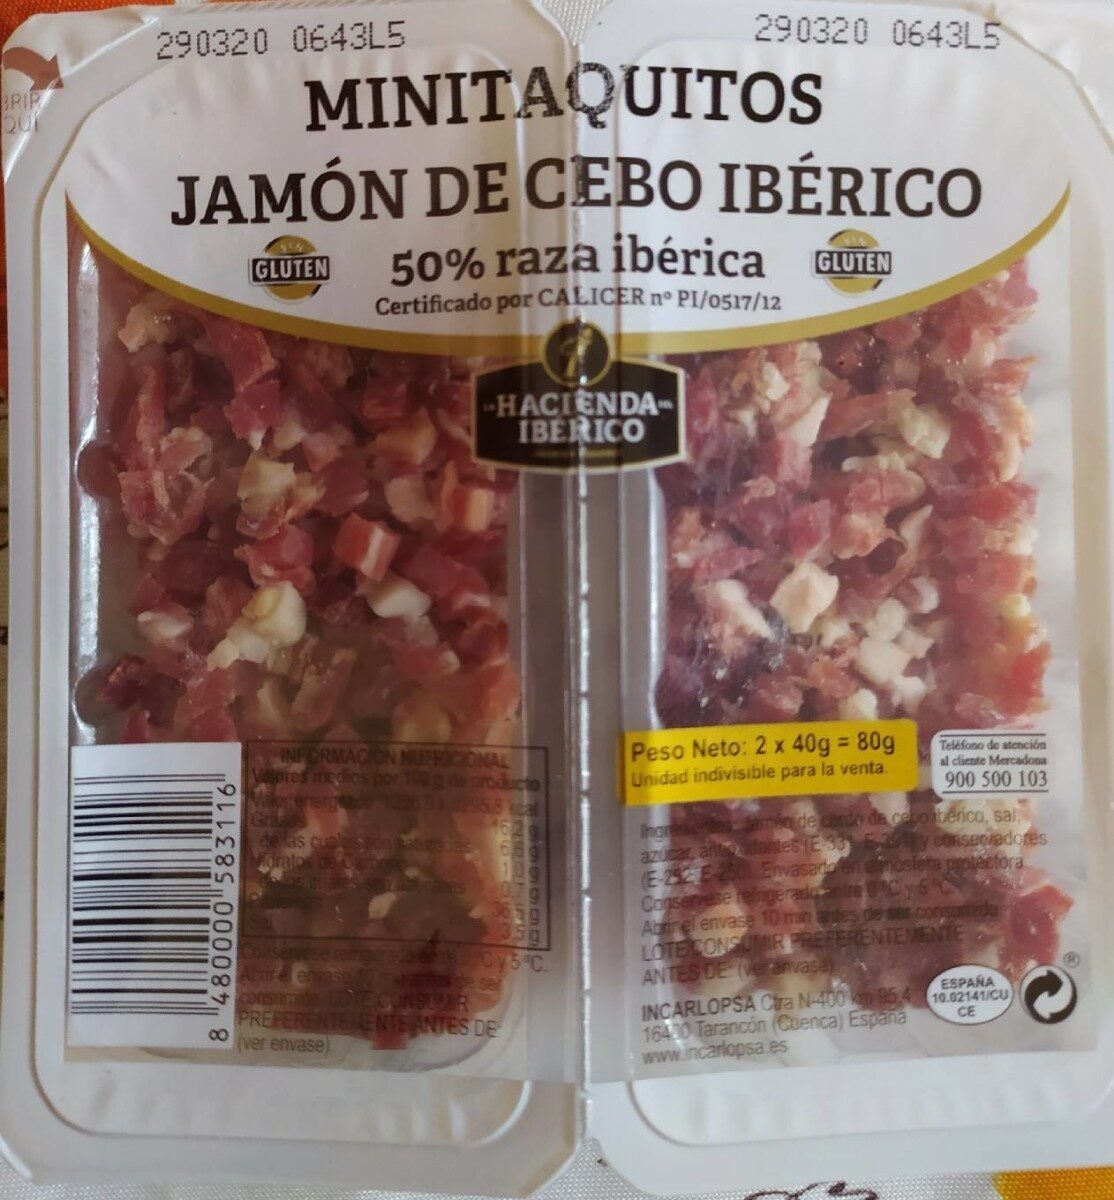 MINITAQUITOS JAMÓN DE CEBO IBÉRICO - Product - es